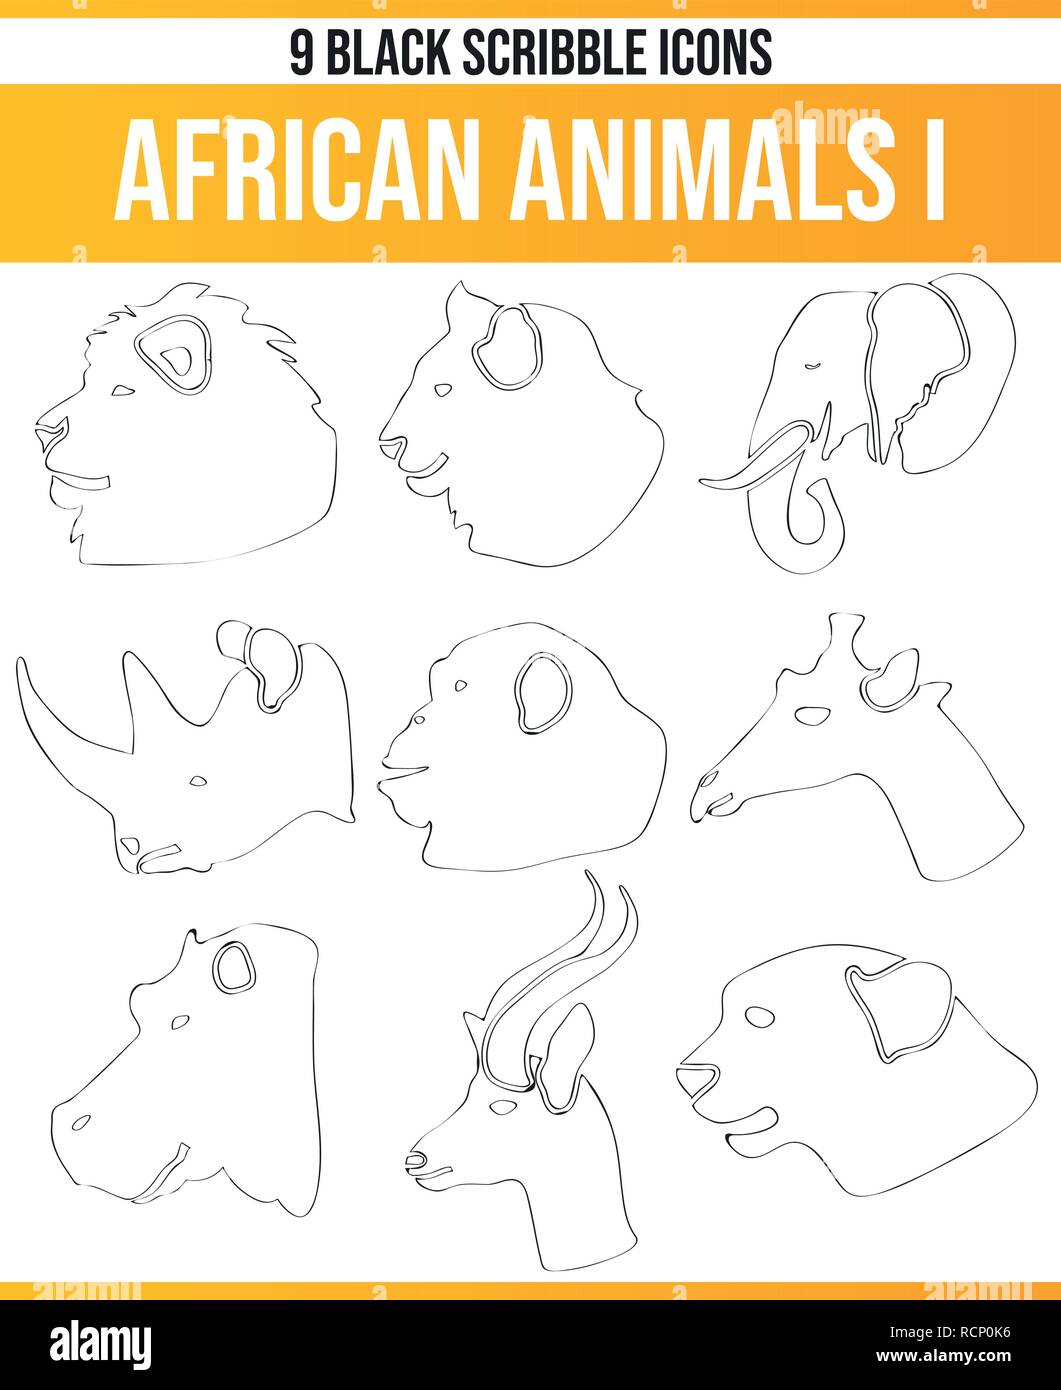 Schwarz Piktoramme/icons über afrikanische Tiere. Dieses Icon Set ist perfekt für kreative Menschen und Designer, die das Thema der afrikanischen Tiere im Th benötigen Stock Vektor